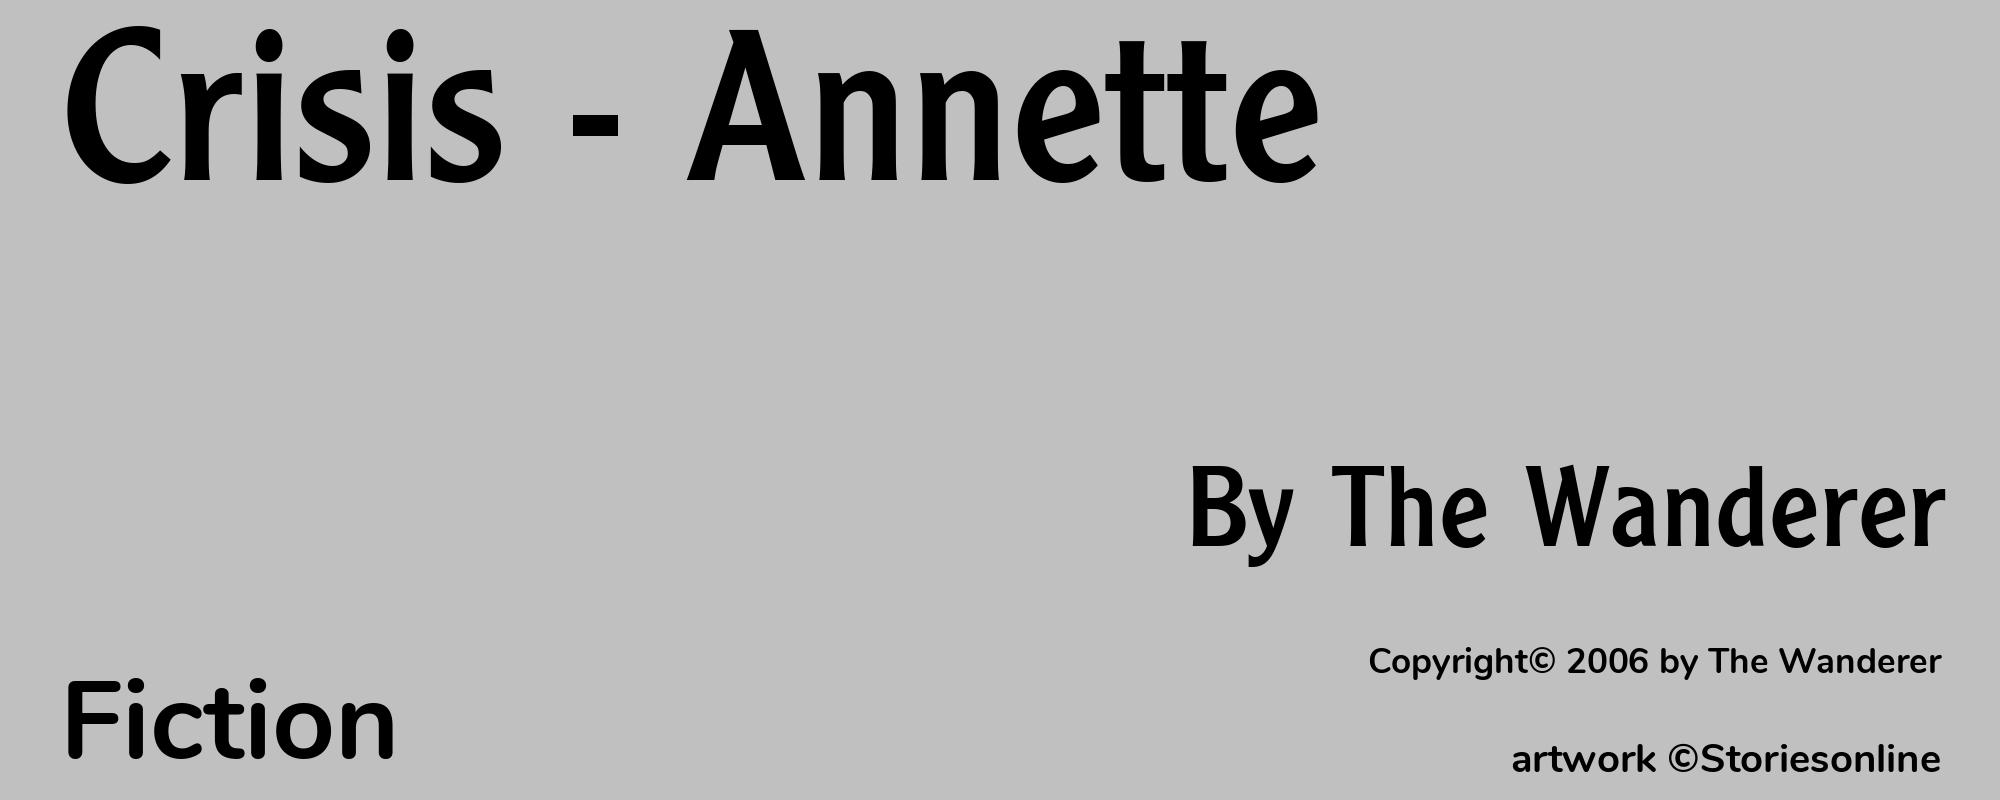 Crisis - Annette - Cover